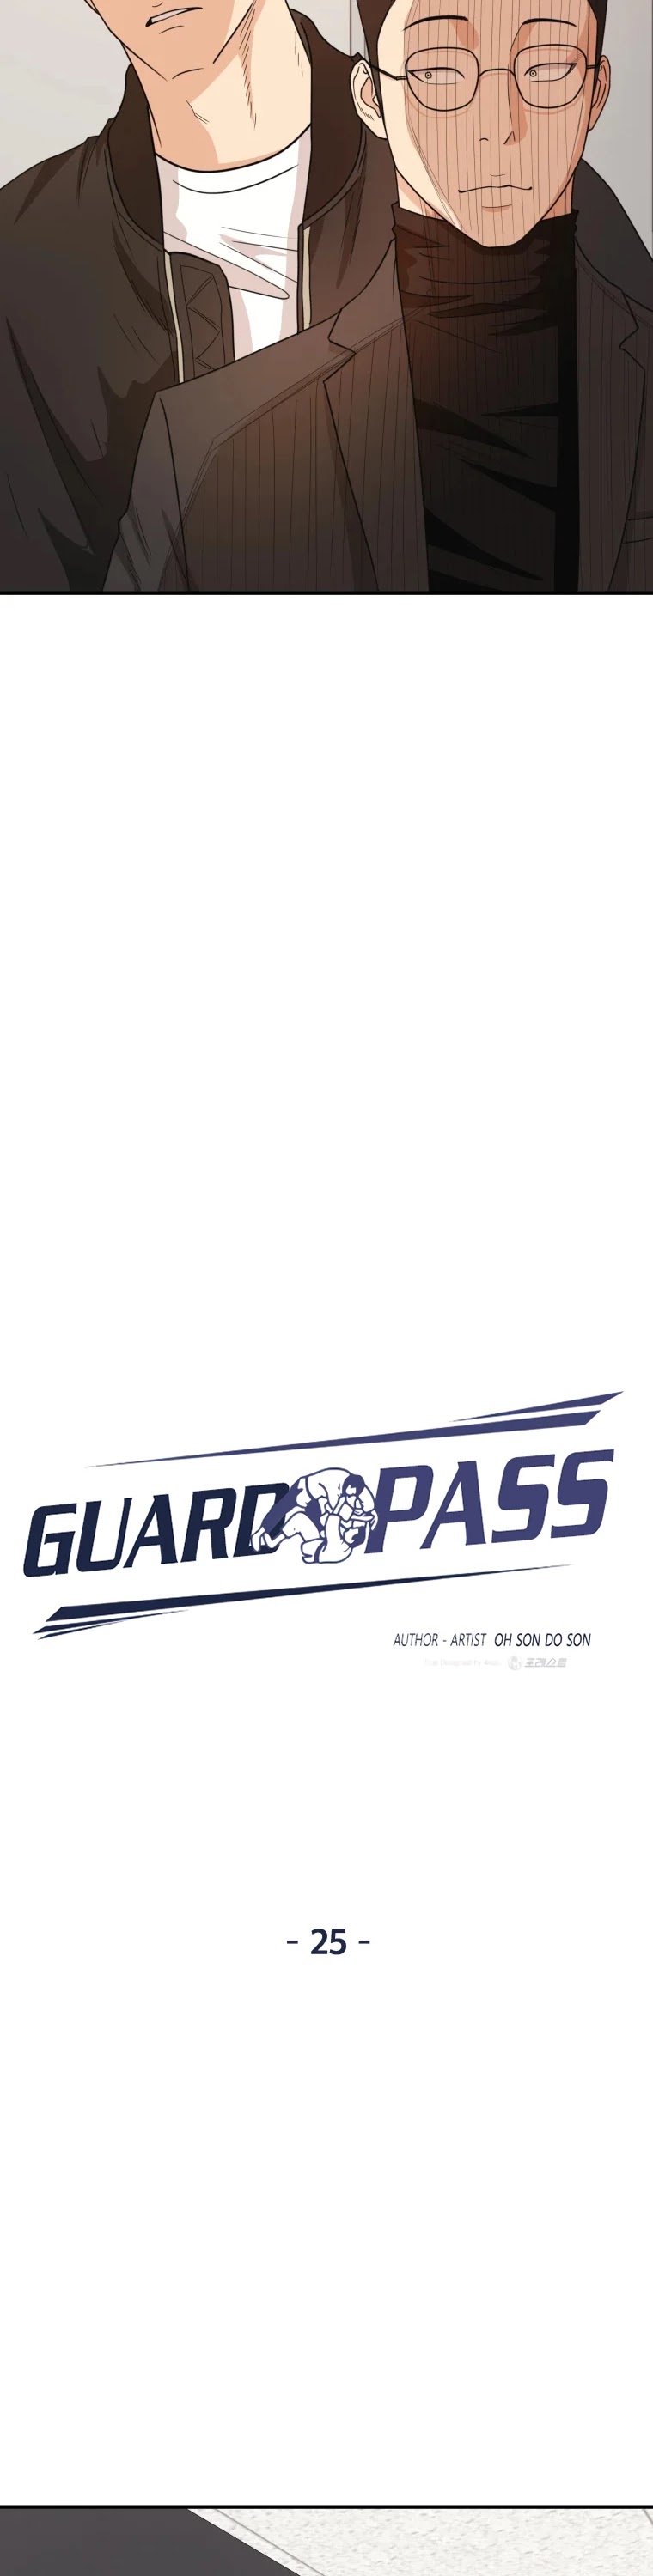 Guard Pass, Guard Pass manga, Guard Pass manhwa, Guard Pass anime, read Guard Pass